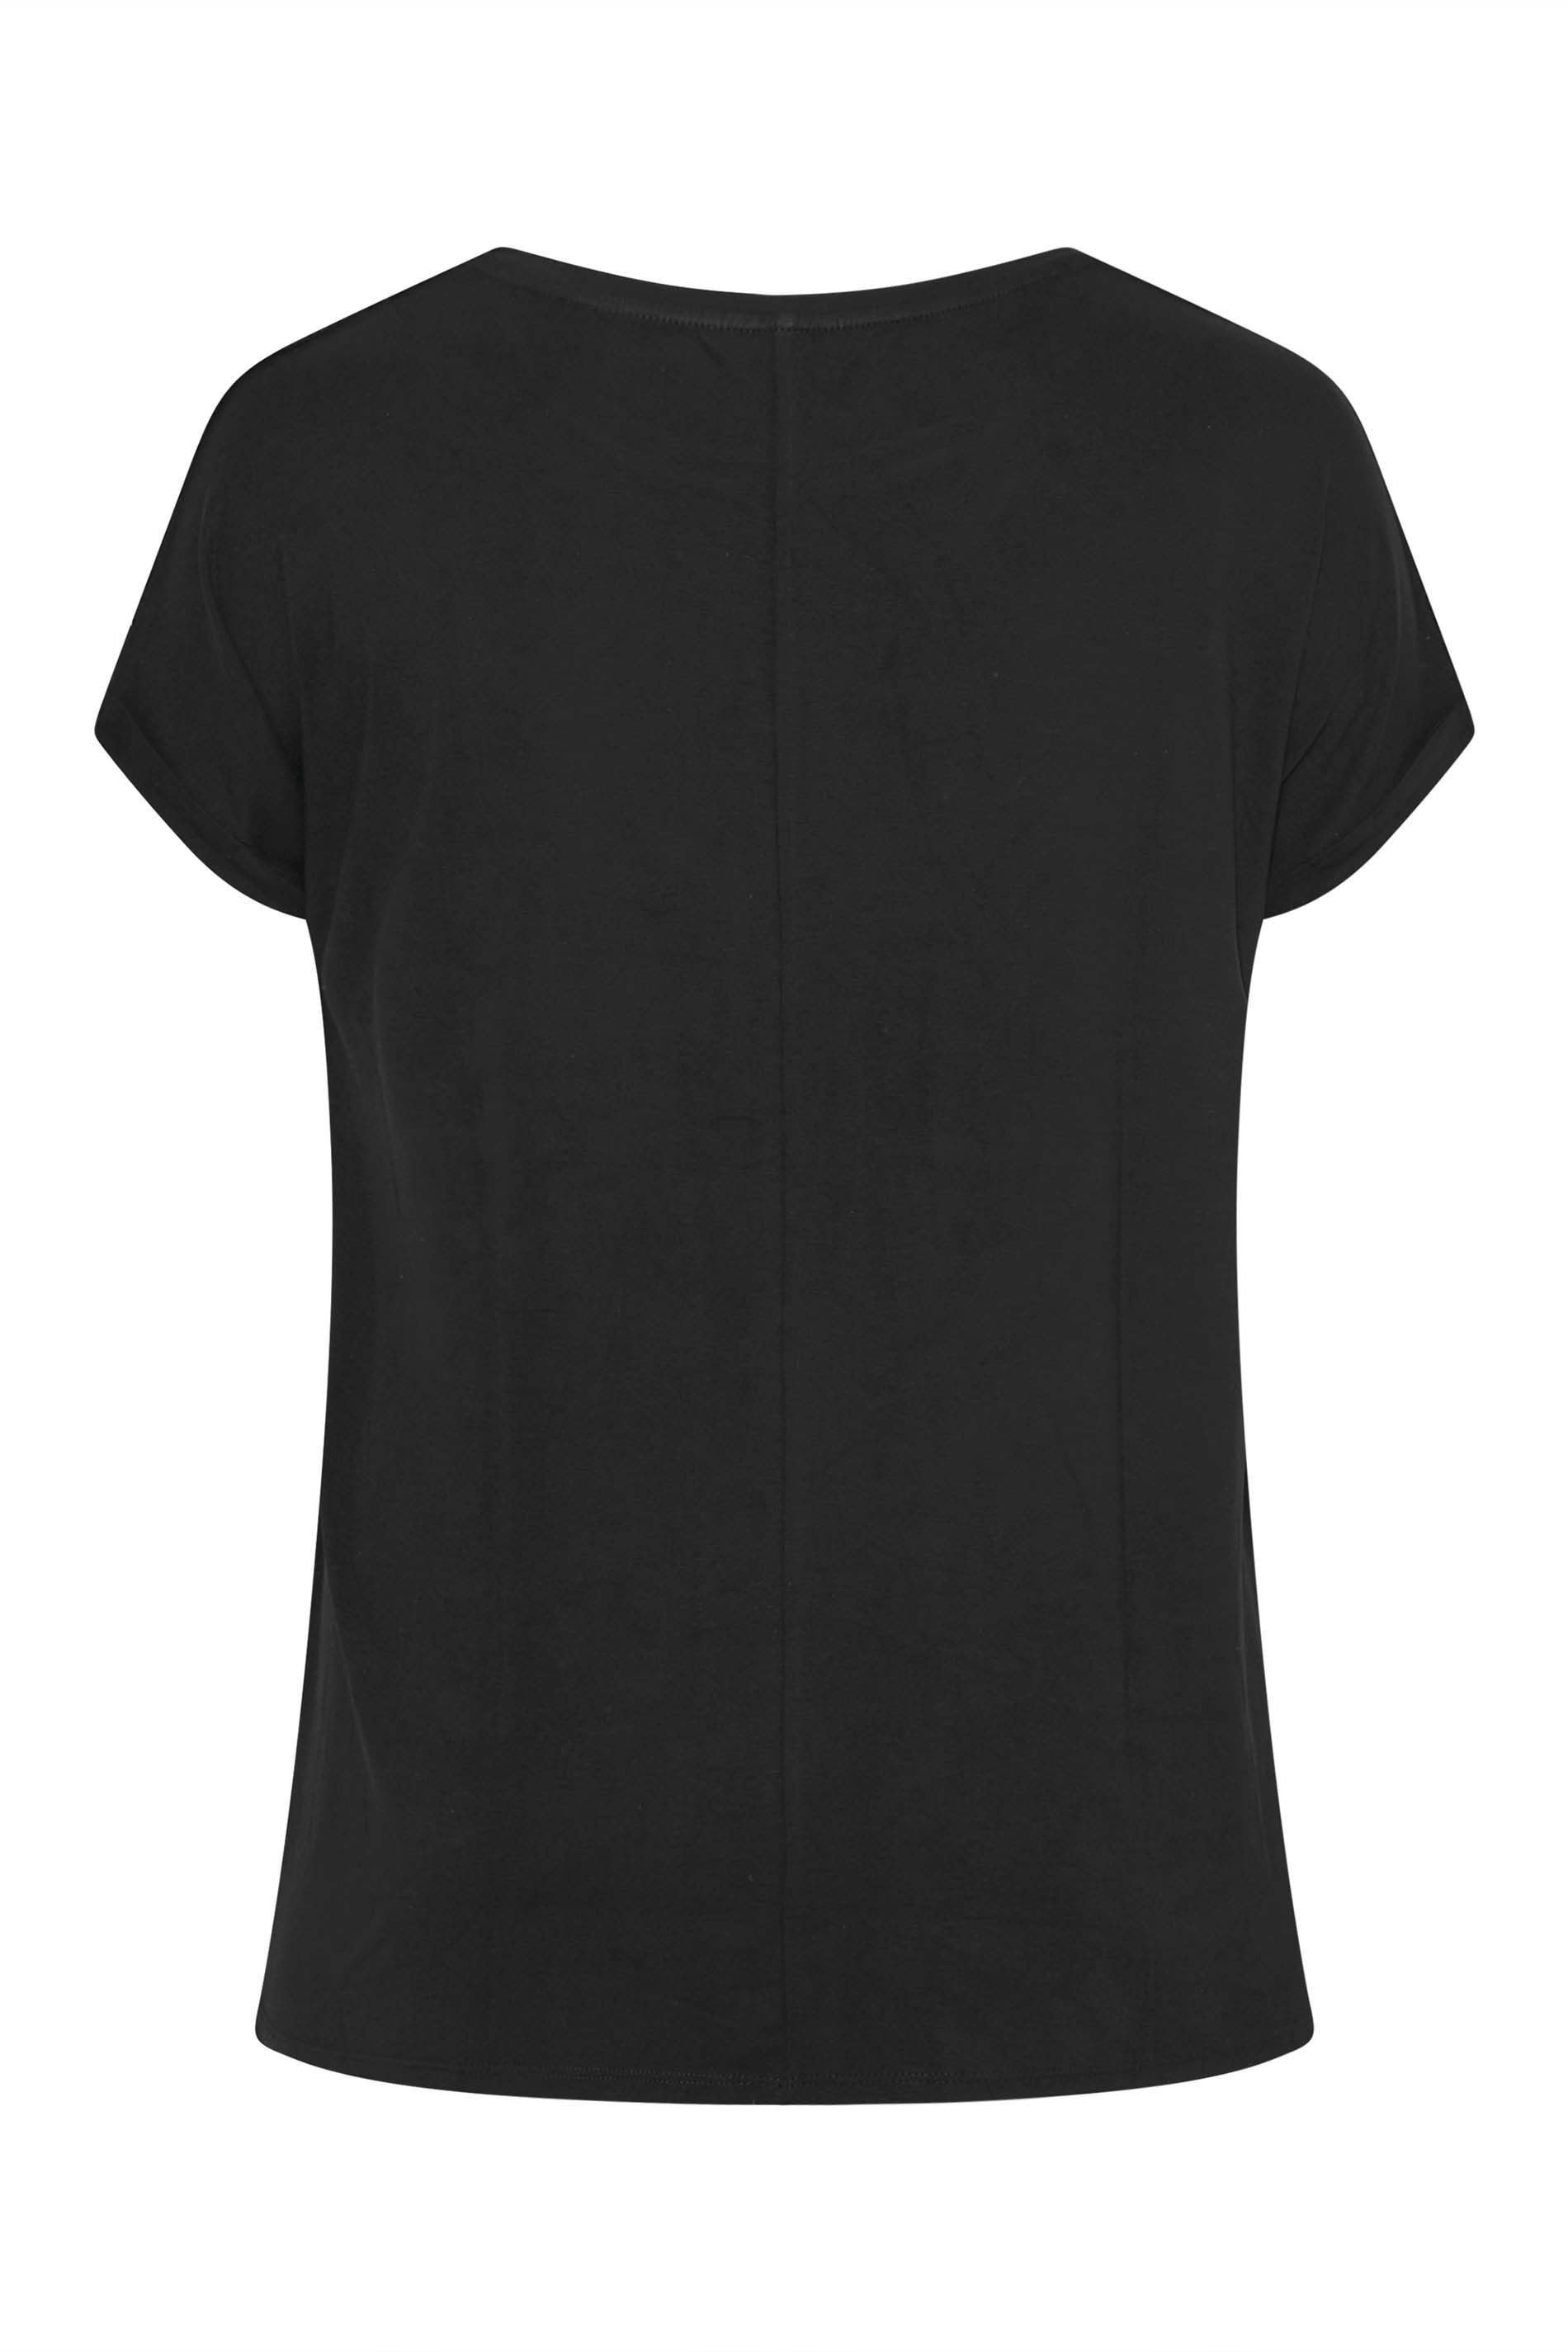 Grande taille  Tops Grande taille  T-Shirts | T-Shirt Noir Manches Courtes à Crochet - ZQ69440